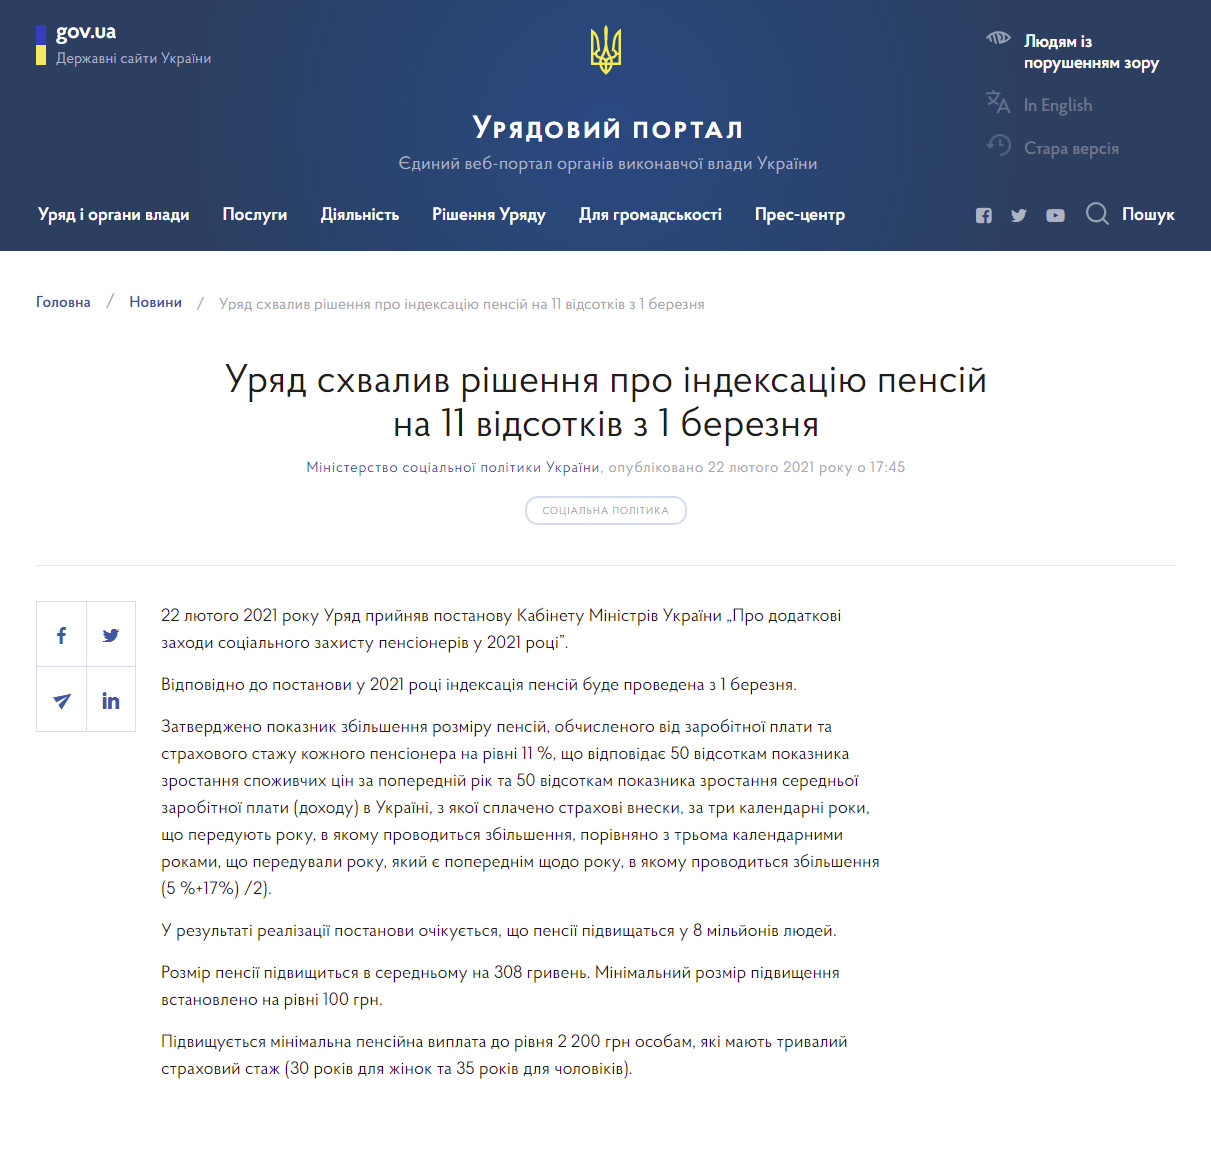 https://www.kmu.gov.ua/news/uryad-shvaliv-rishennya-pro-indeksaciyu-pensij-na-11-vidsotkiv-z-1-bereznya